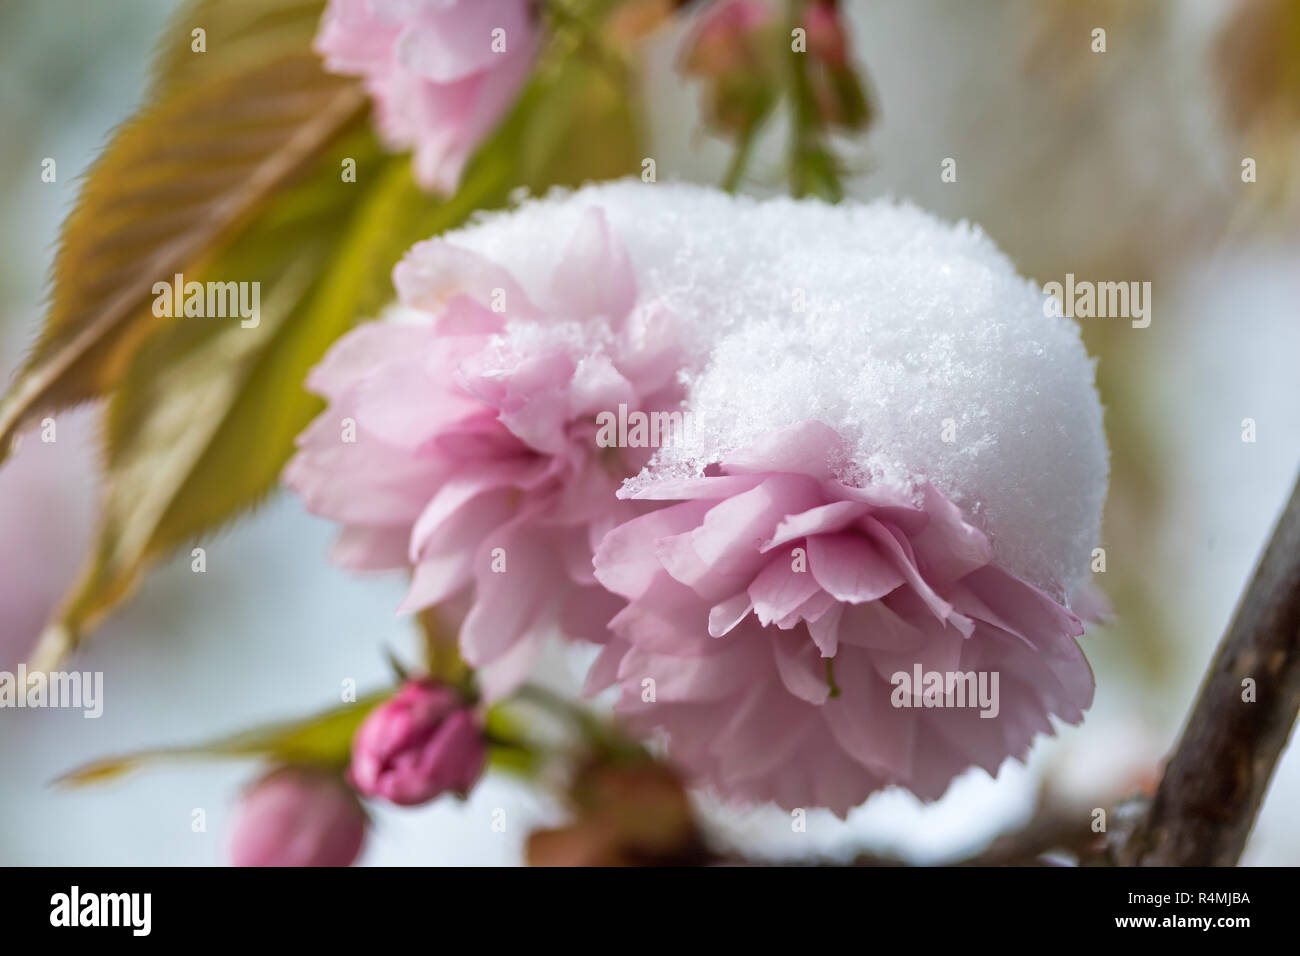 Snowy pink flowers of sakura tree Stock Photo